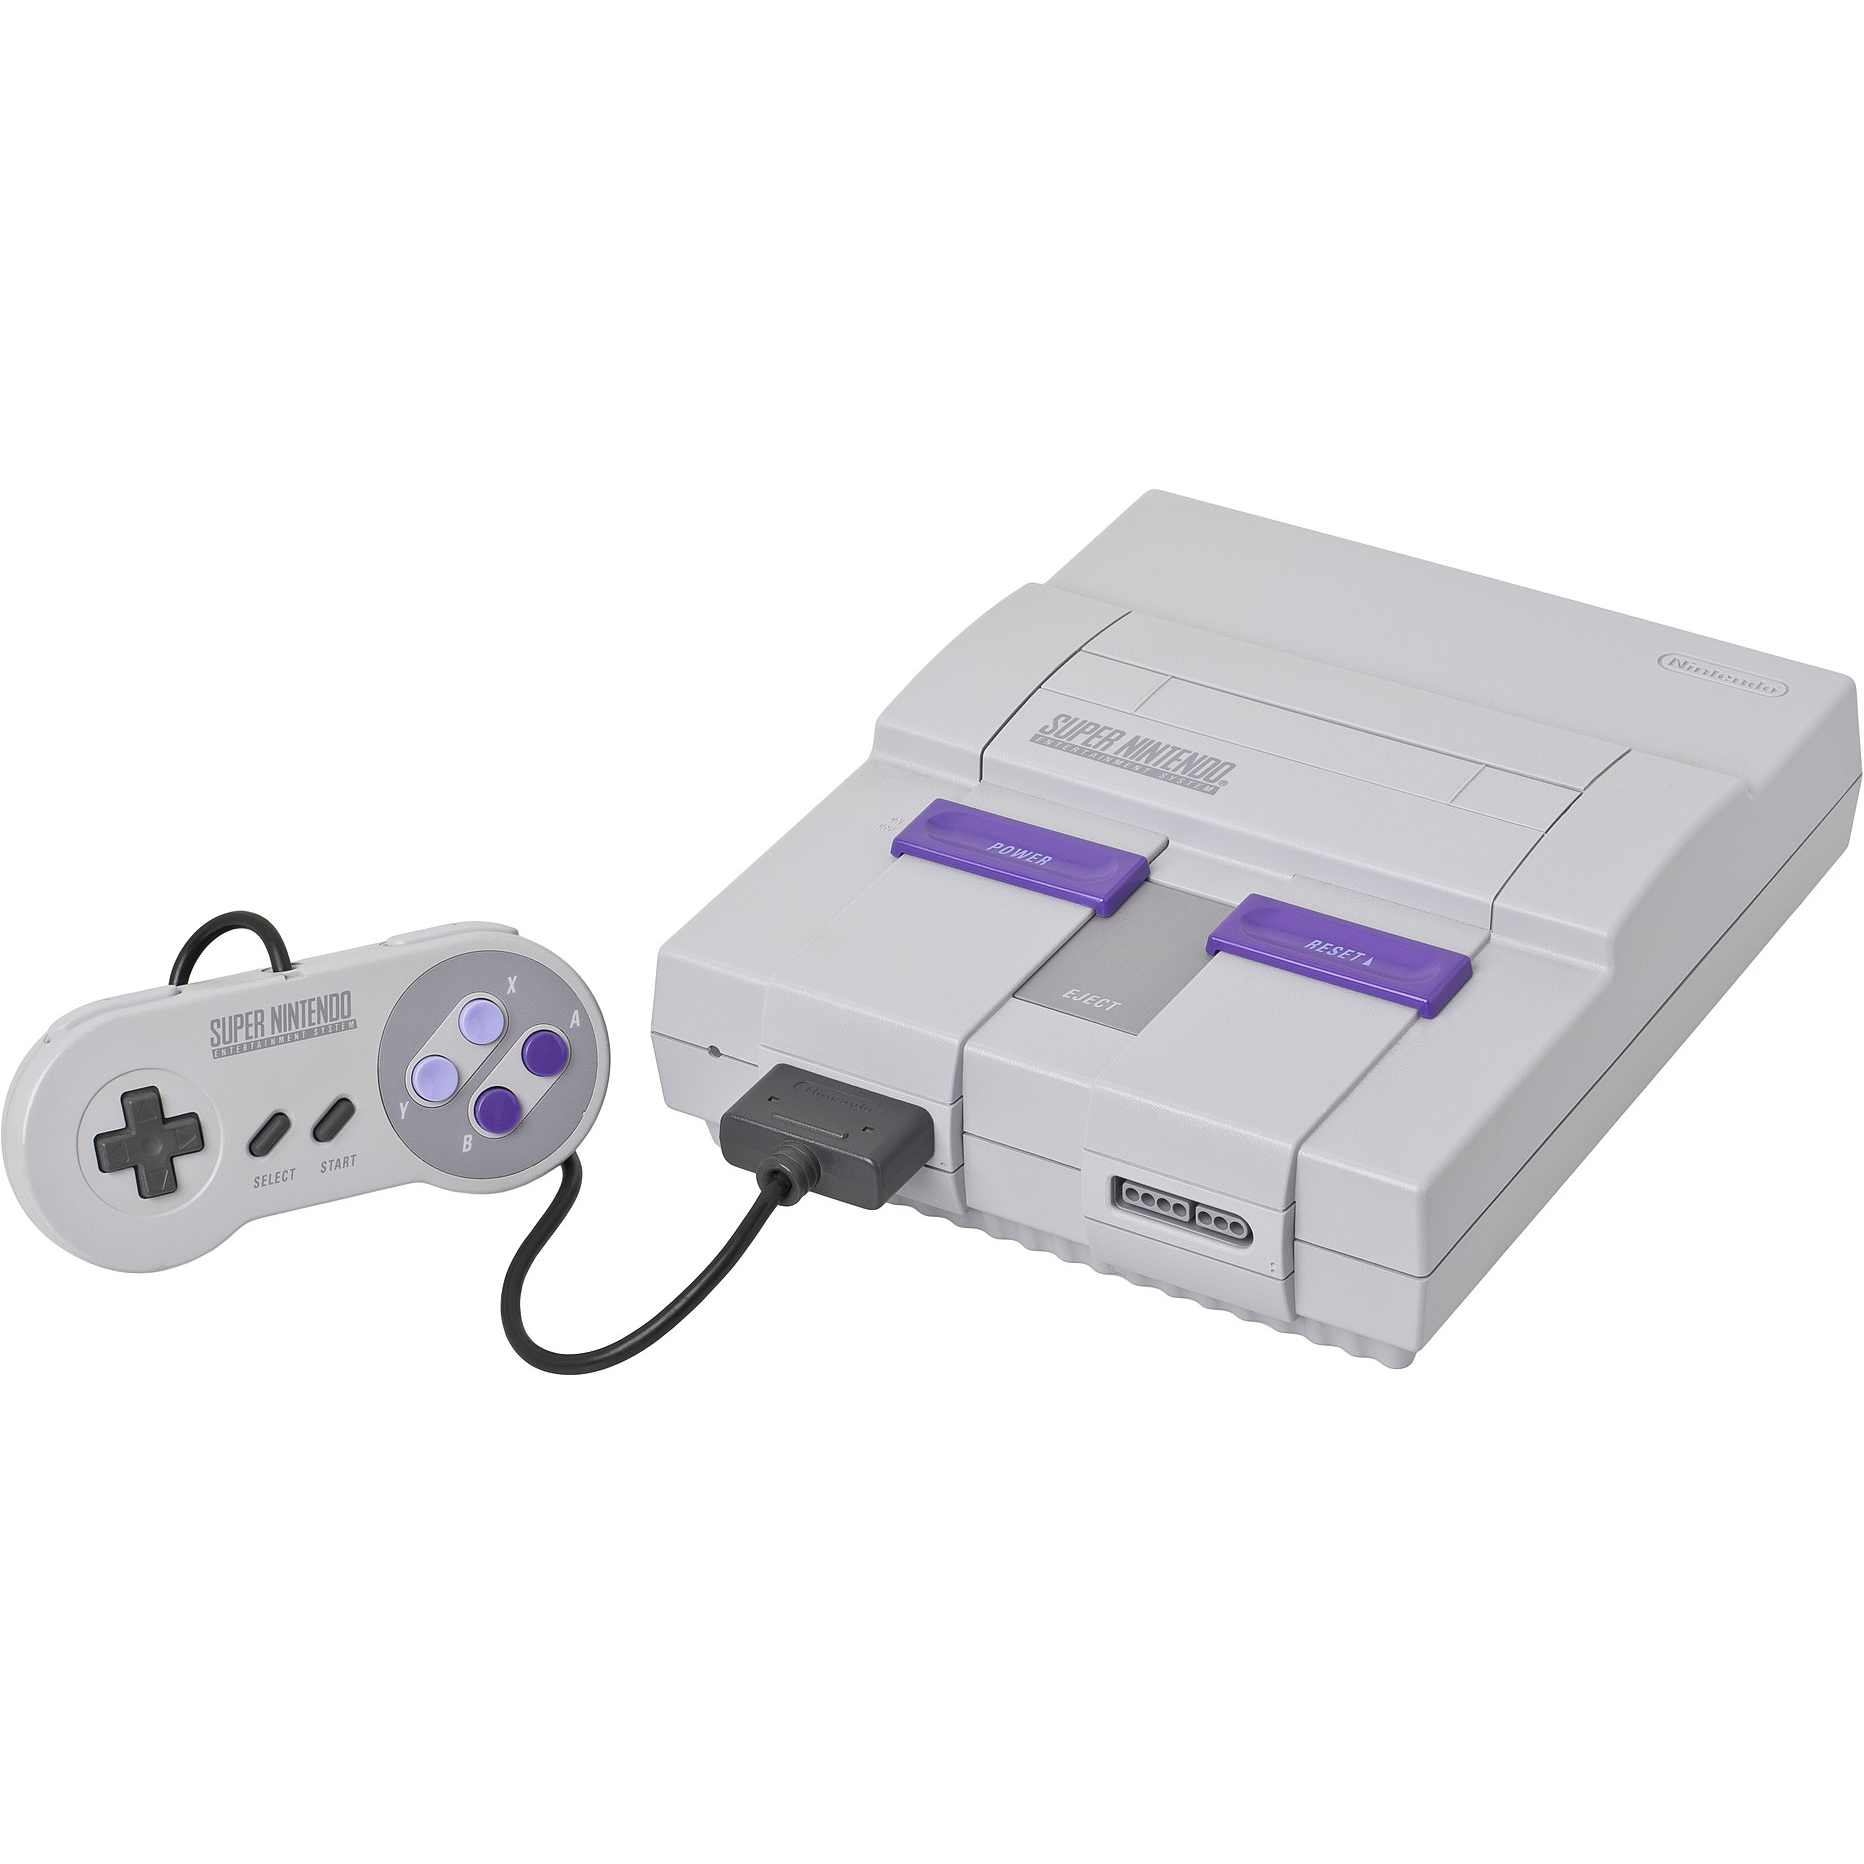 Super Nintendo Entertainment System (Grade 1)